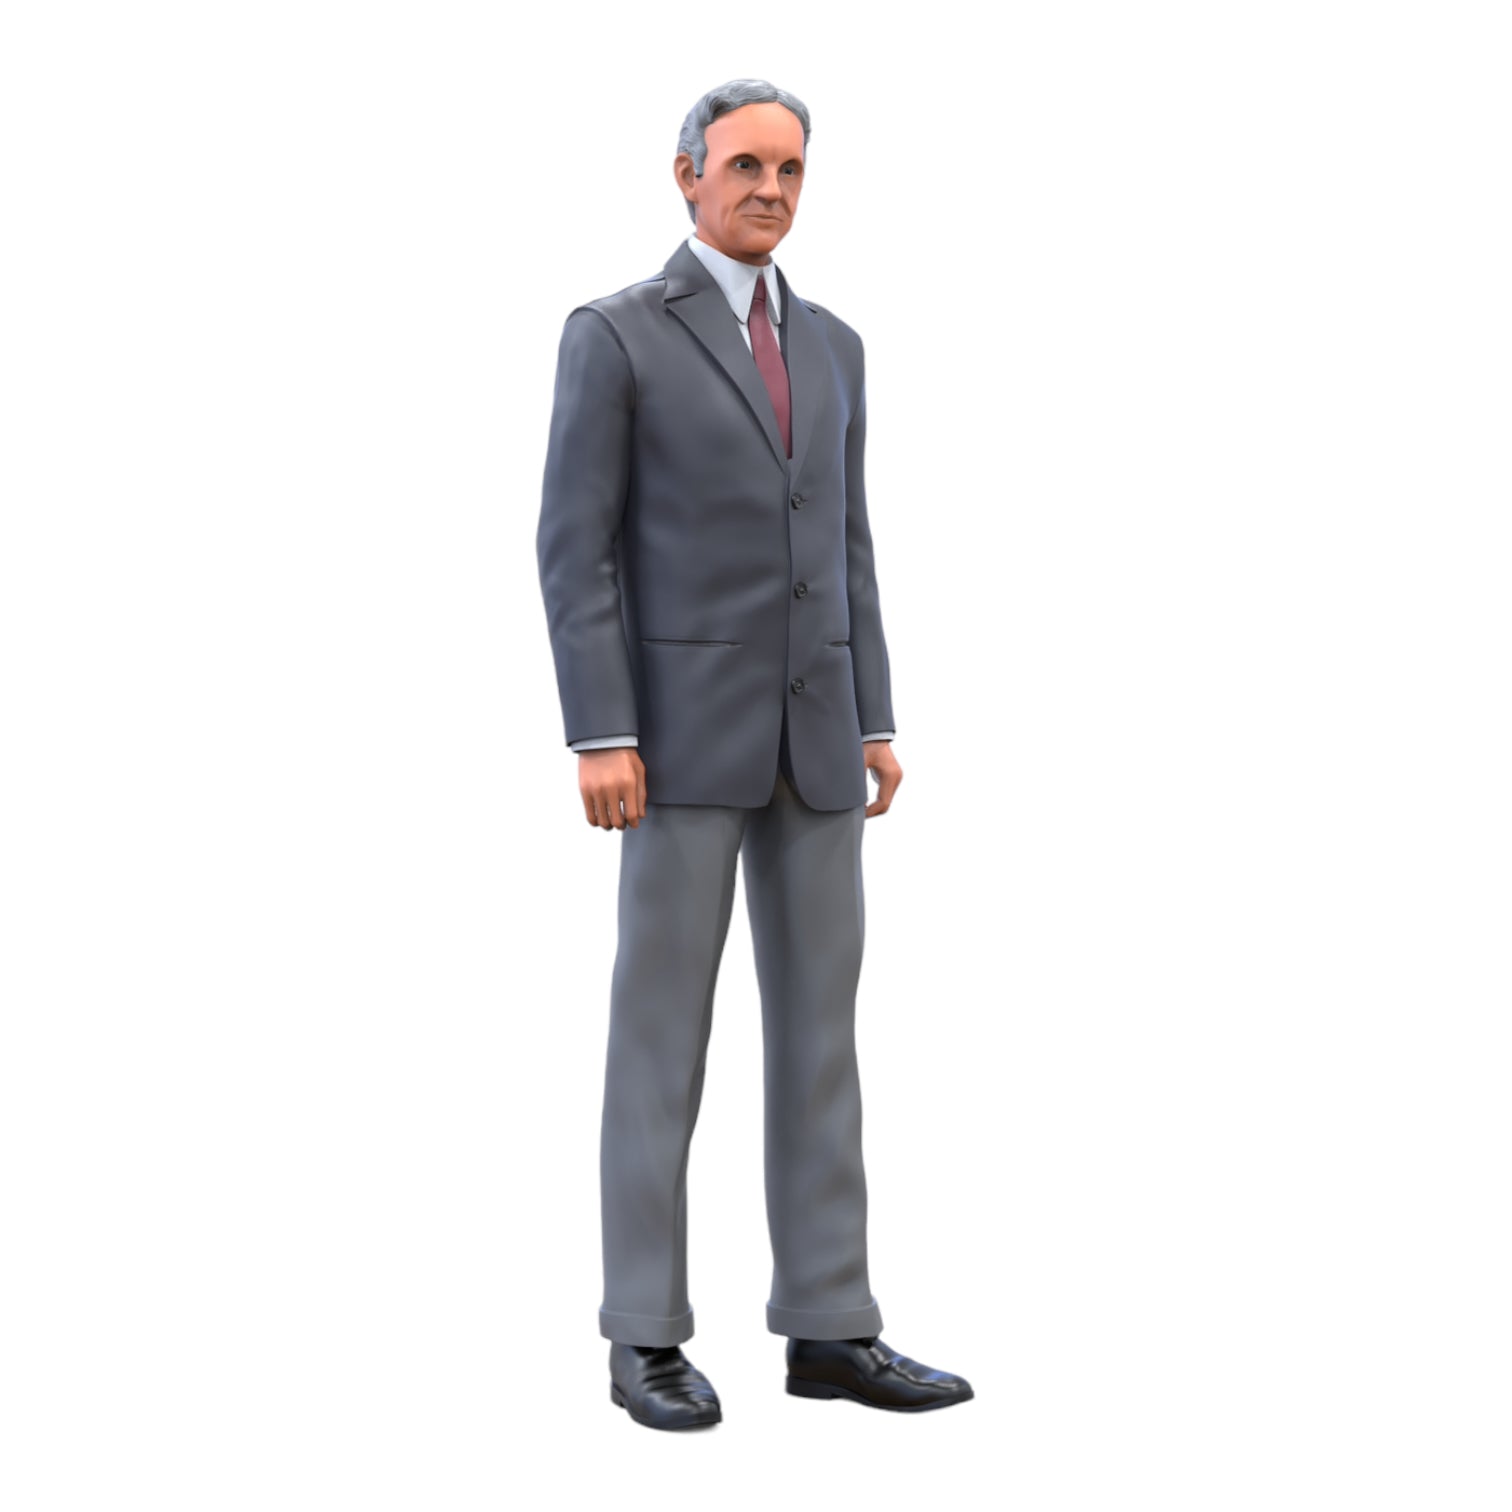 Produktfoto Diorama und Modellbau Miniatur Figur: Mann im Anzug